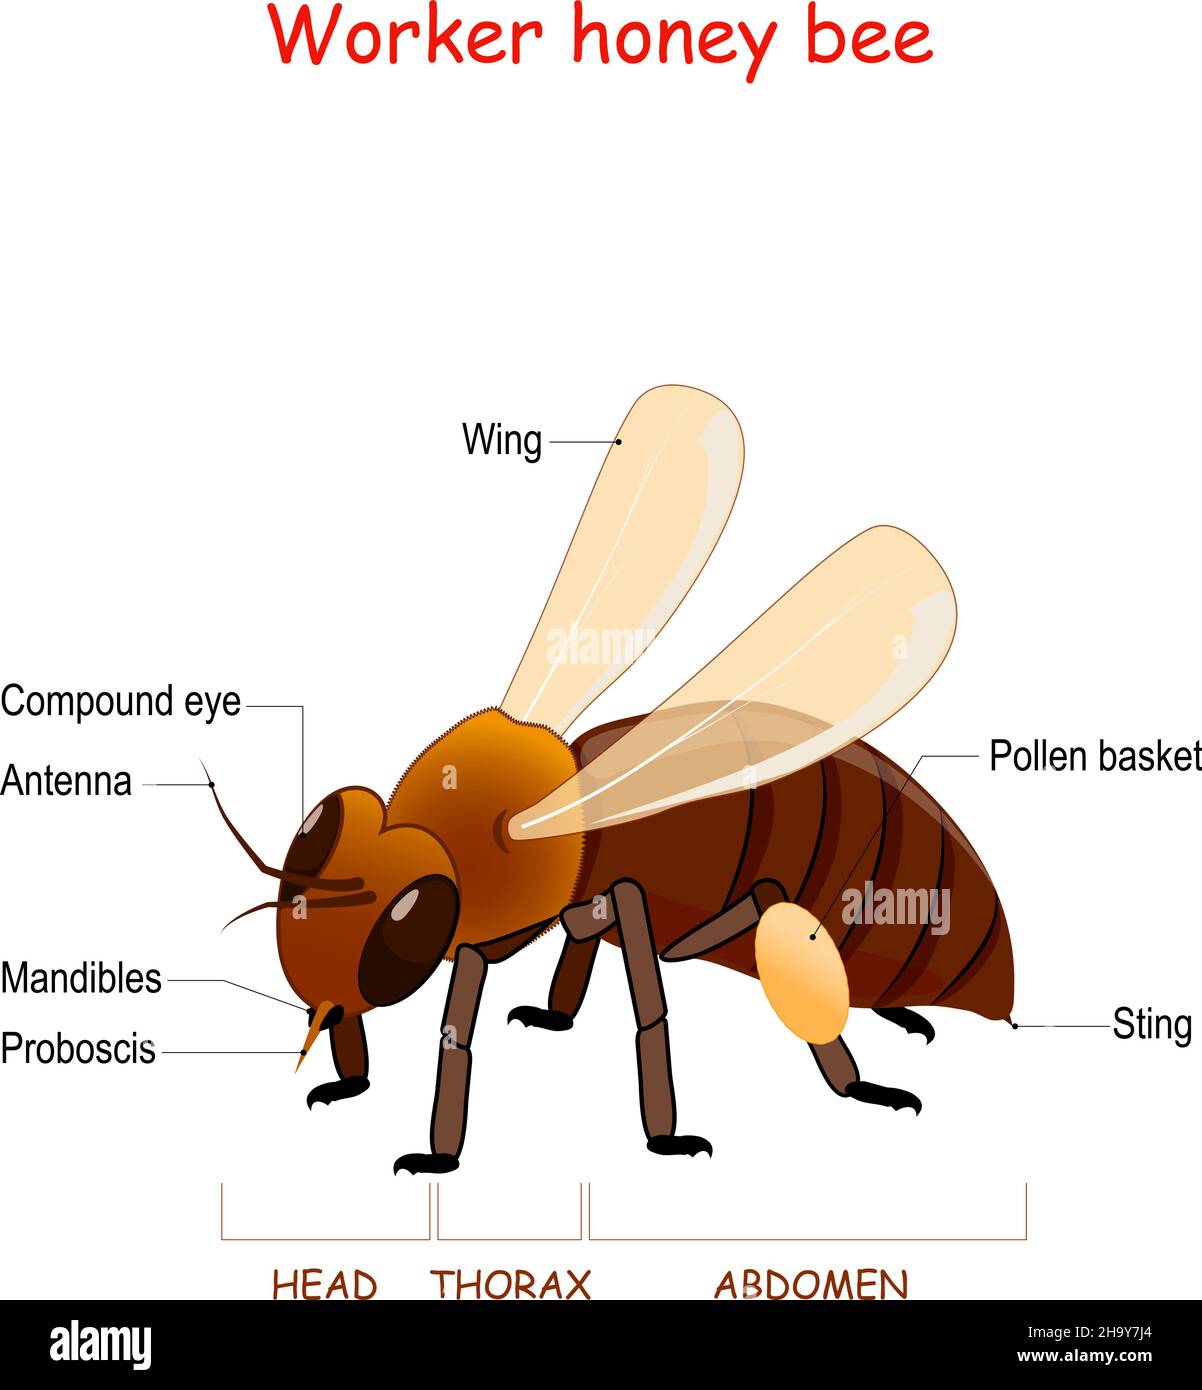 Anatomie de l'abeille ouvrière.Gros plan d'abeille avec ailes, piqûre, proboscis, mandibles, panier de pollen,et œil composé.Affiche d'information. Éducation Illustration de Vecteur